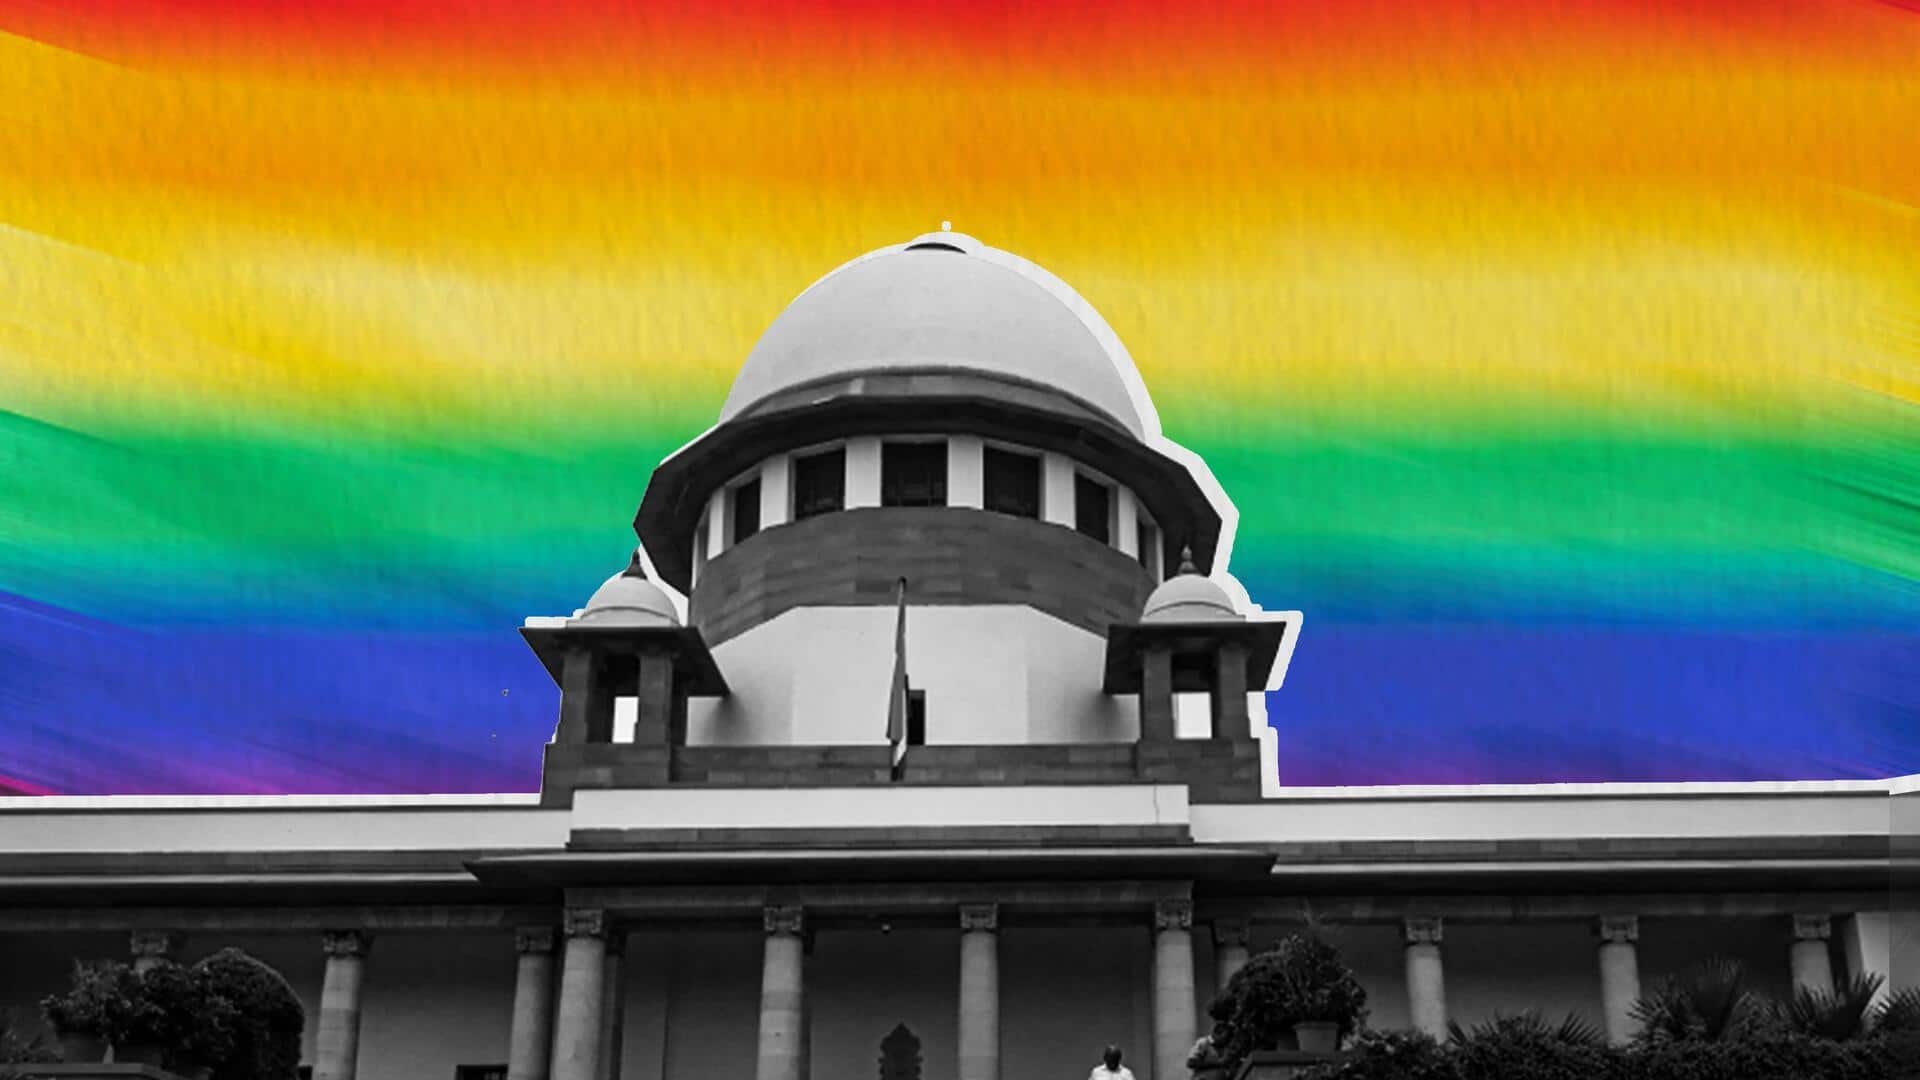 सुप्रीम कोर्ट ने समलैंगिक विवाह को मान्यता देने से संबंधित याचिकाओं को संवैधानिक पीठ को भेजा